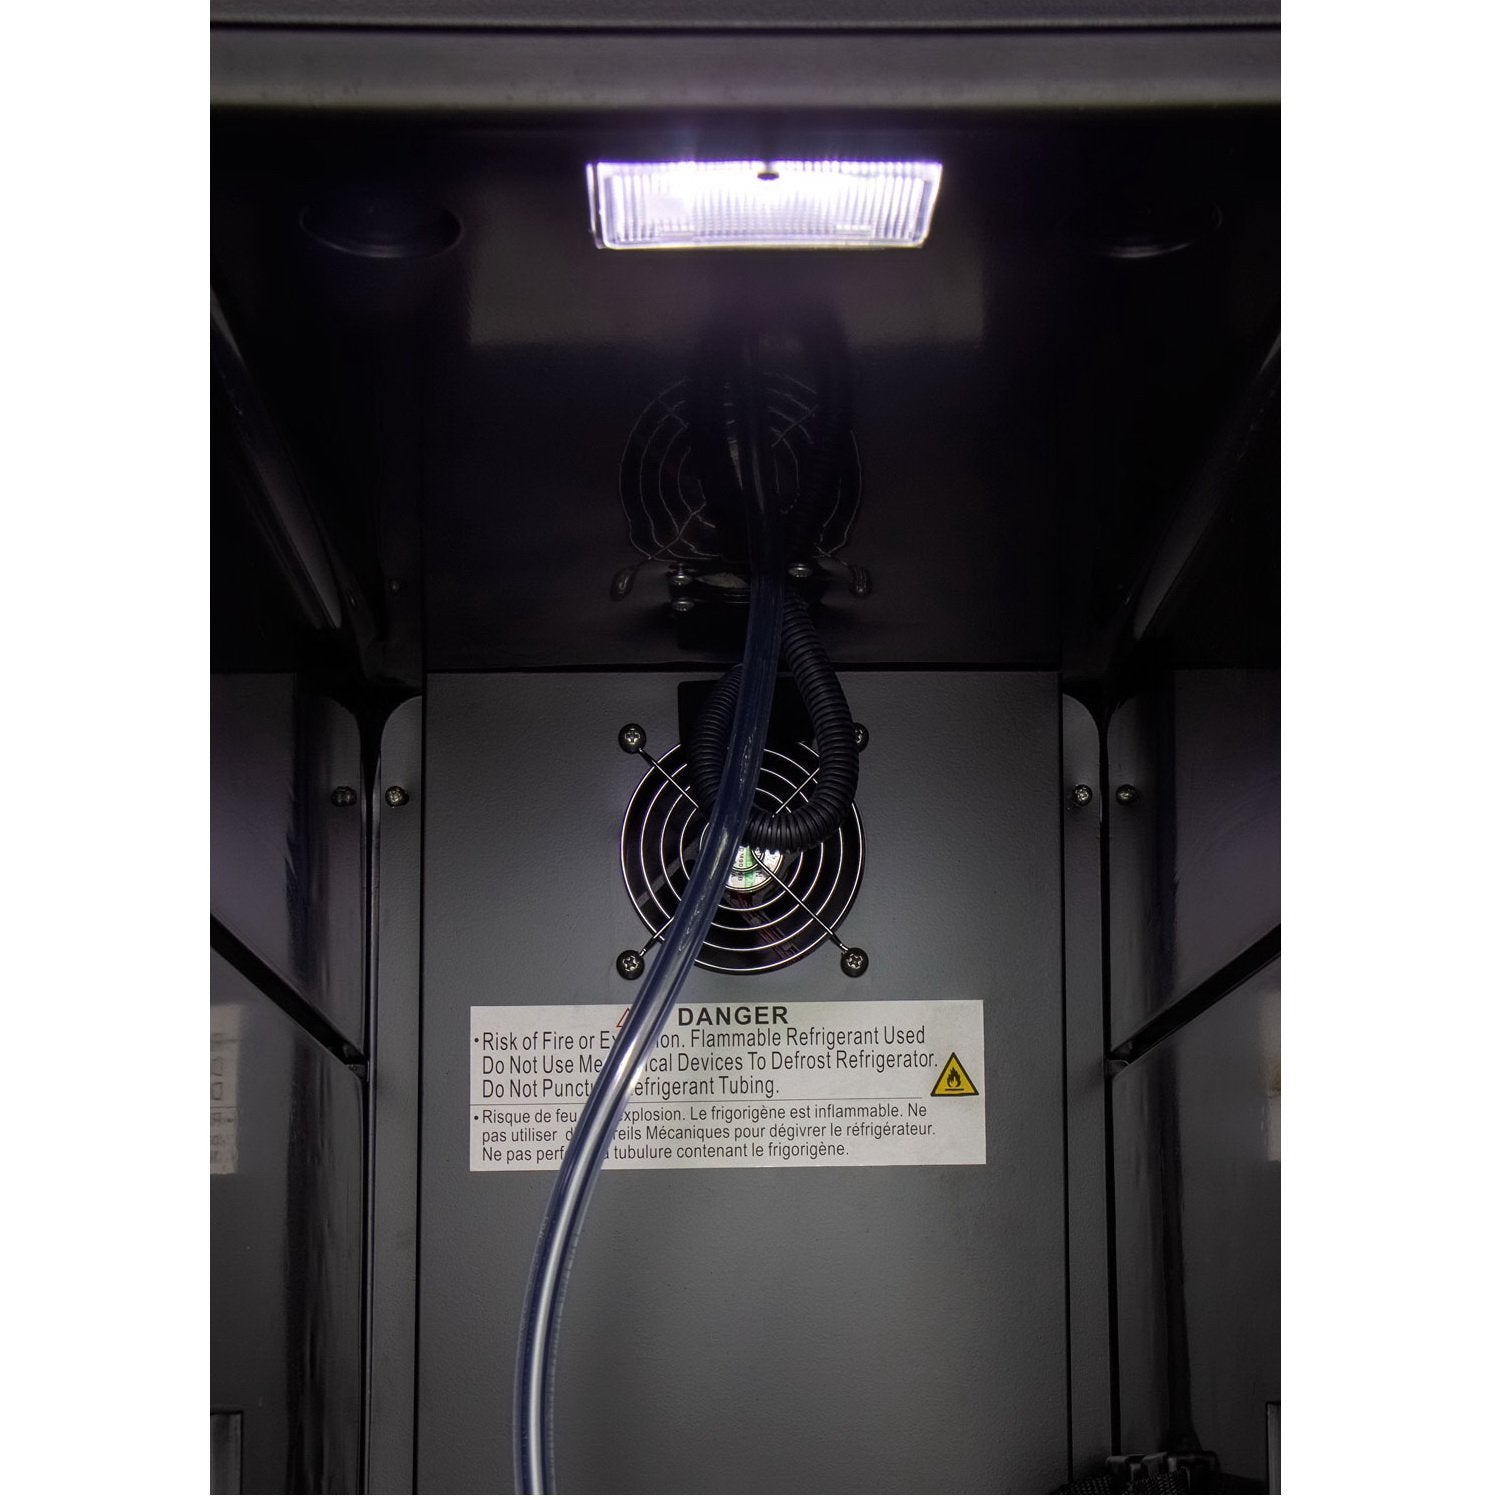 Kegco 15" Wide Commercial Grade Digital Kombucha Dispenser with Black Door